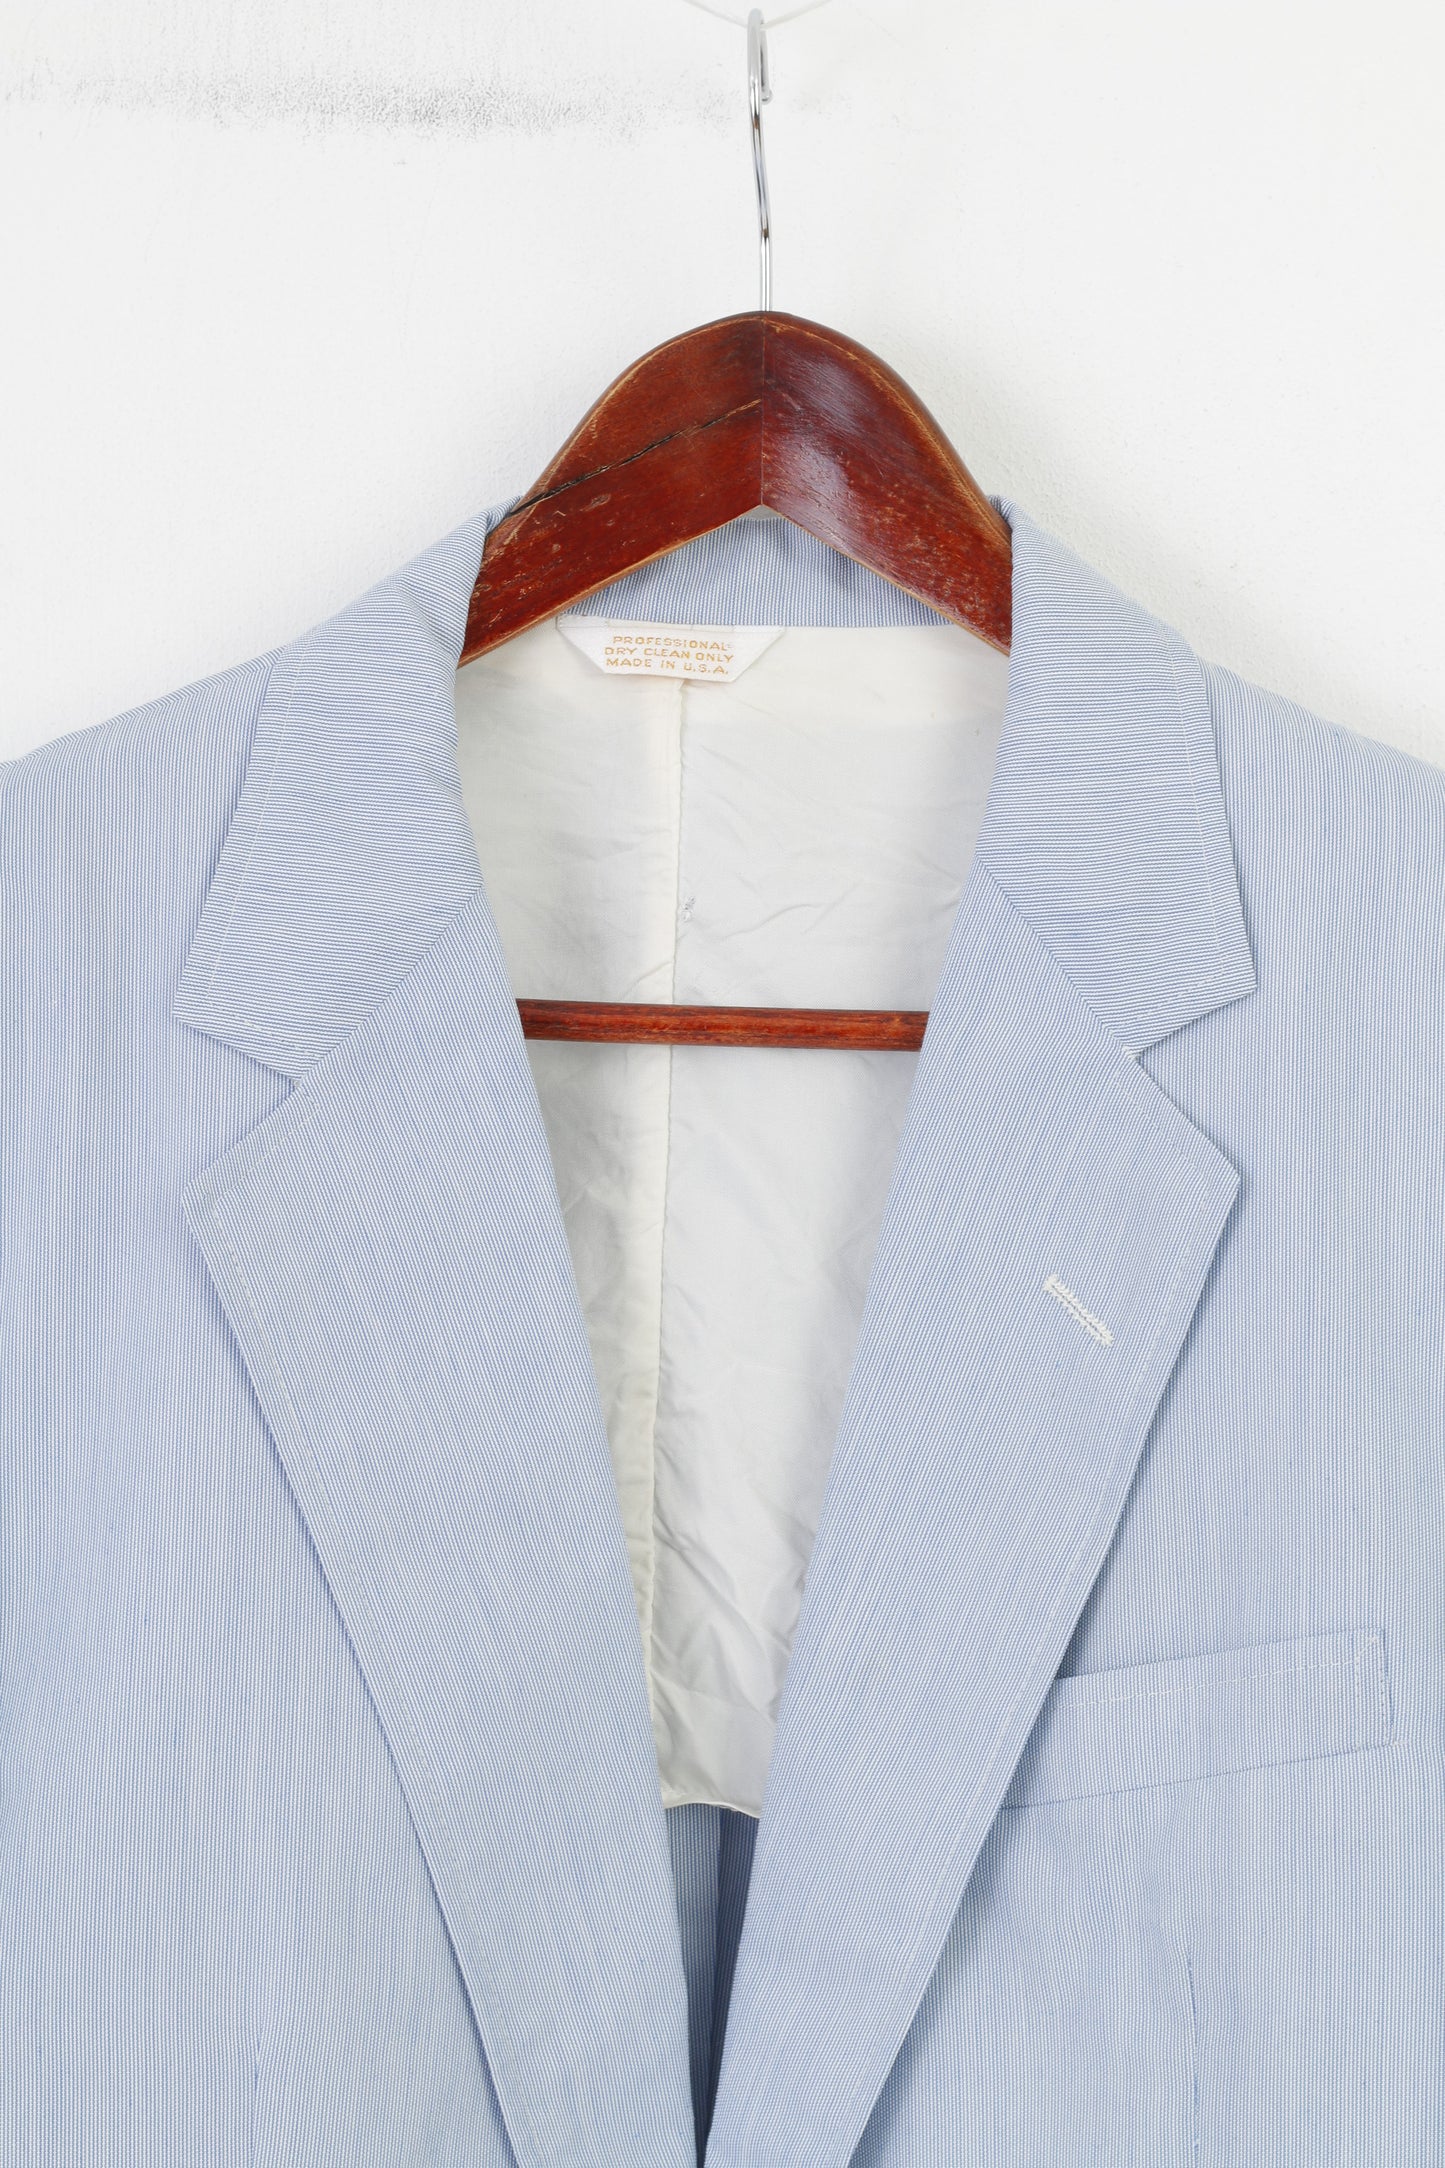 Nordstrom Men 50 Blazer Blue Striped Bottom Collar Elegant Shoulder Pads Jacket